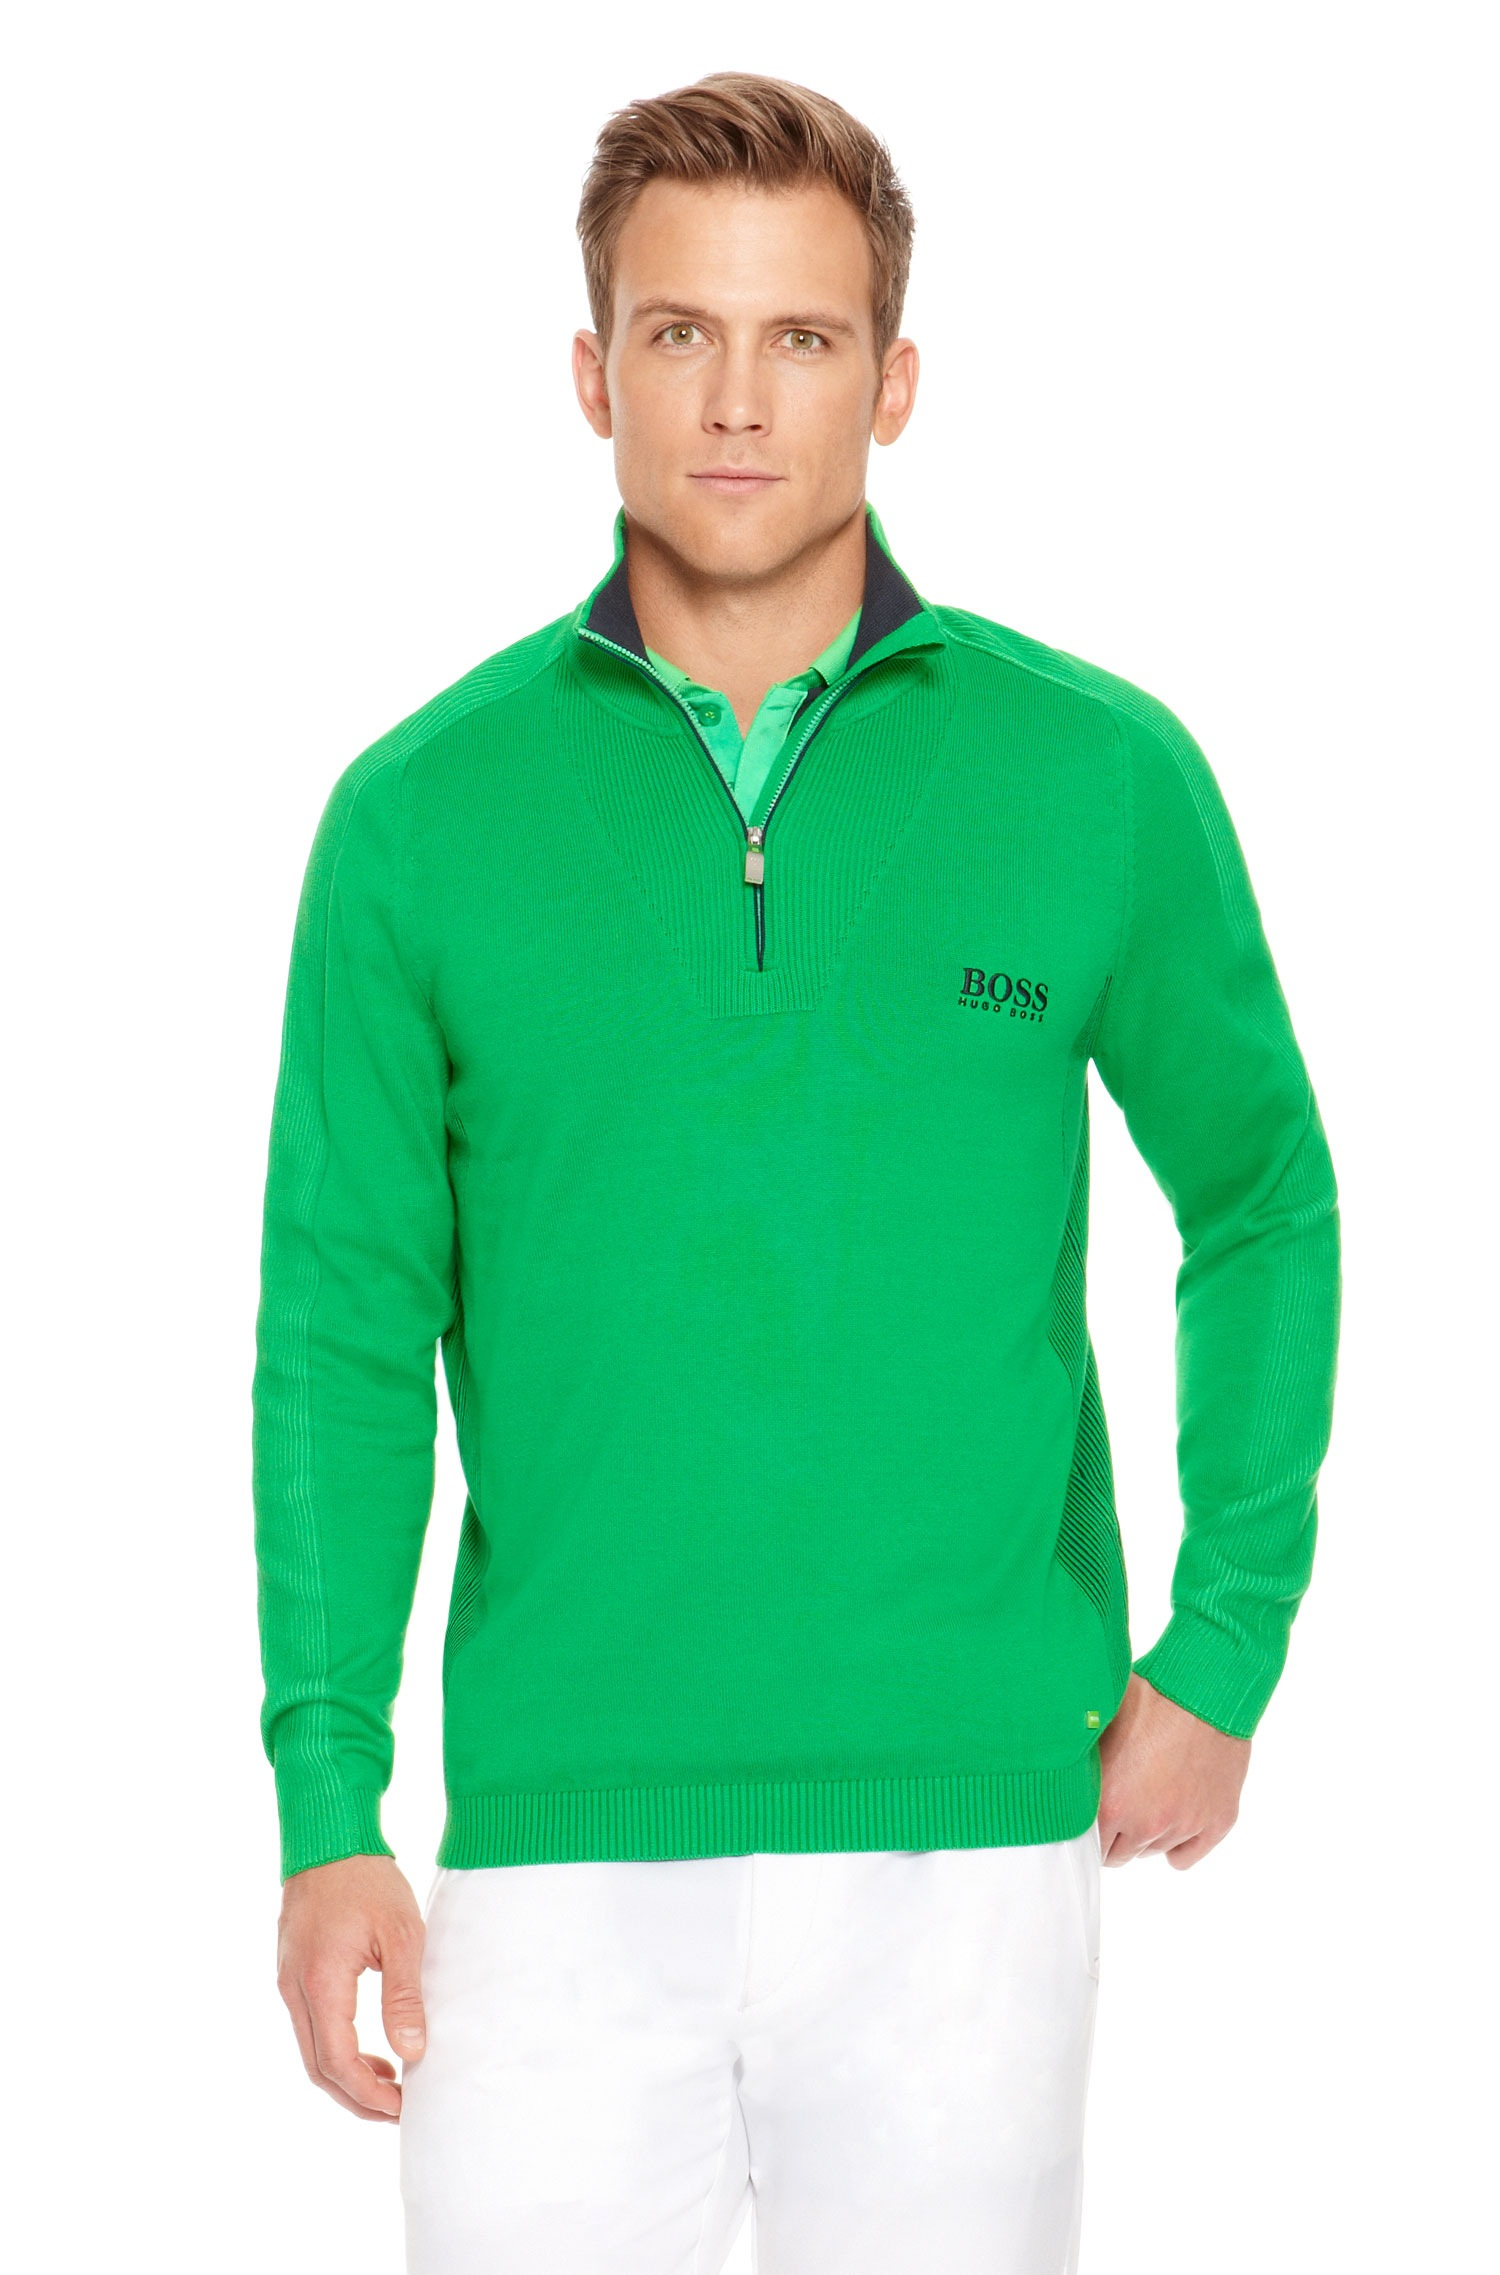 BOSS Green Golf Sweater Zelchior Pro Waterrepellent in Green for Men - Lyst